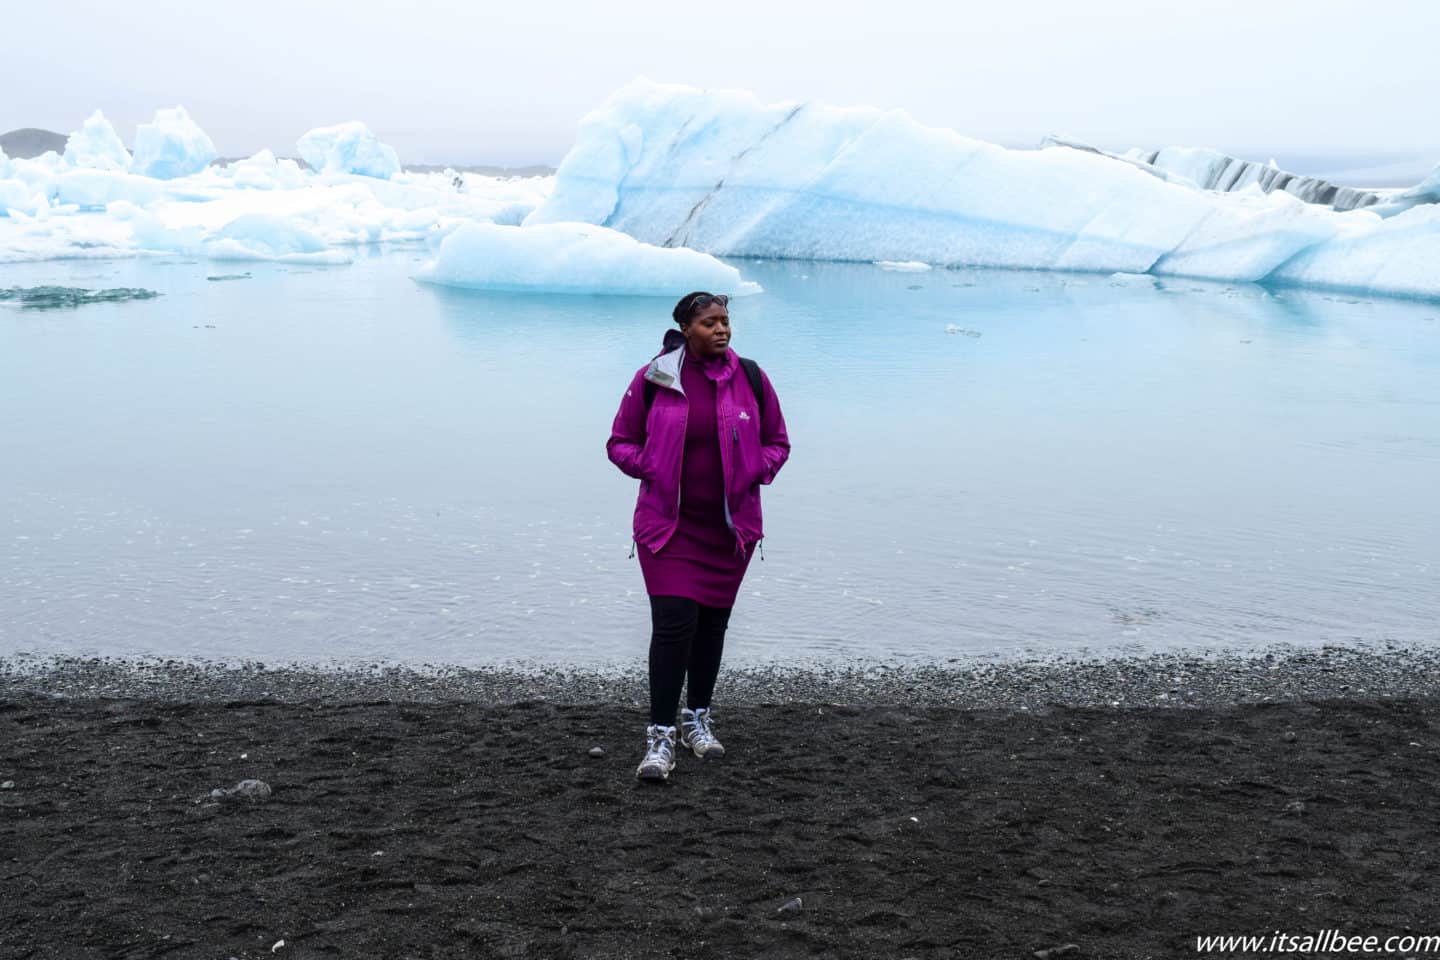 Iceland Essentials - Les meilleures chaussures de randonnée pour l'Islande - Conseils pour les meilleures chaussures pour l'Islande, bonnes bottes pour l'Islande en hiver et en été. Chaussures de marche, bottes de neige et plus encore. Tout ce que vous devez savoir sur les chaussures à emporter en Islande pour diverses activités. #traveltips #itsallbee #trip #adventure #winter #besttimetovisit www.itsallbee.com #europe #hiking #glacier #lagoon